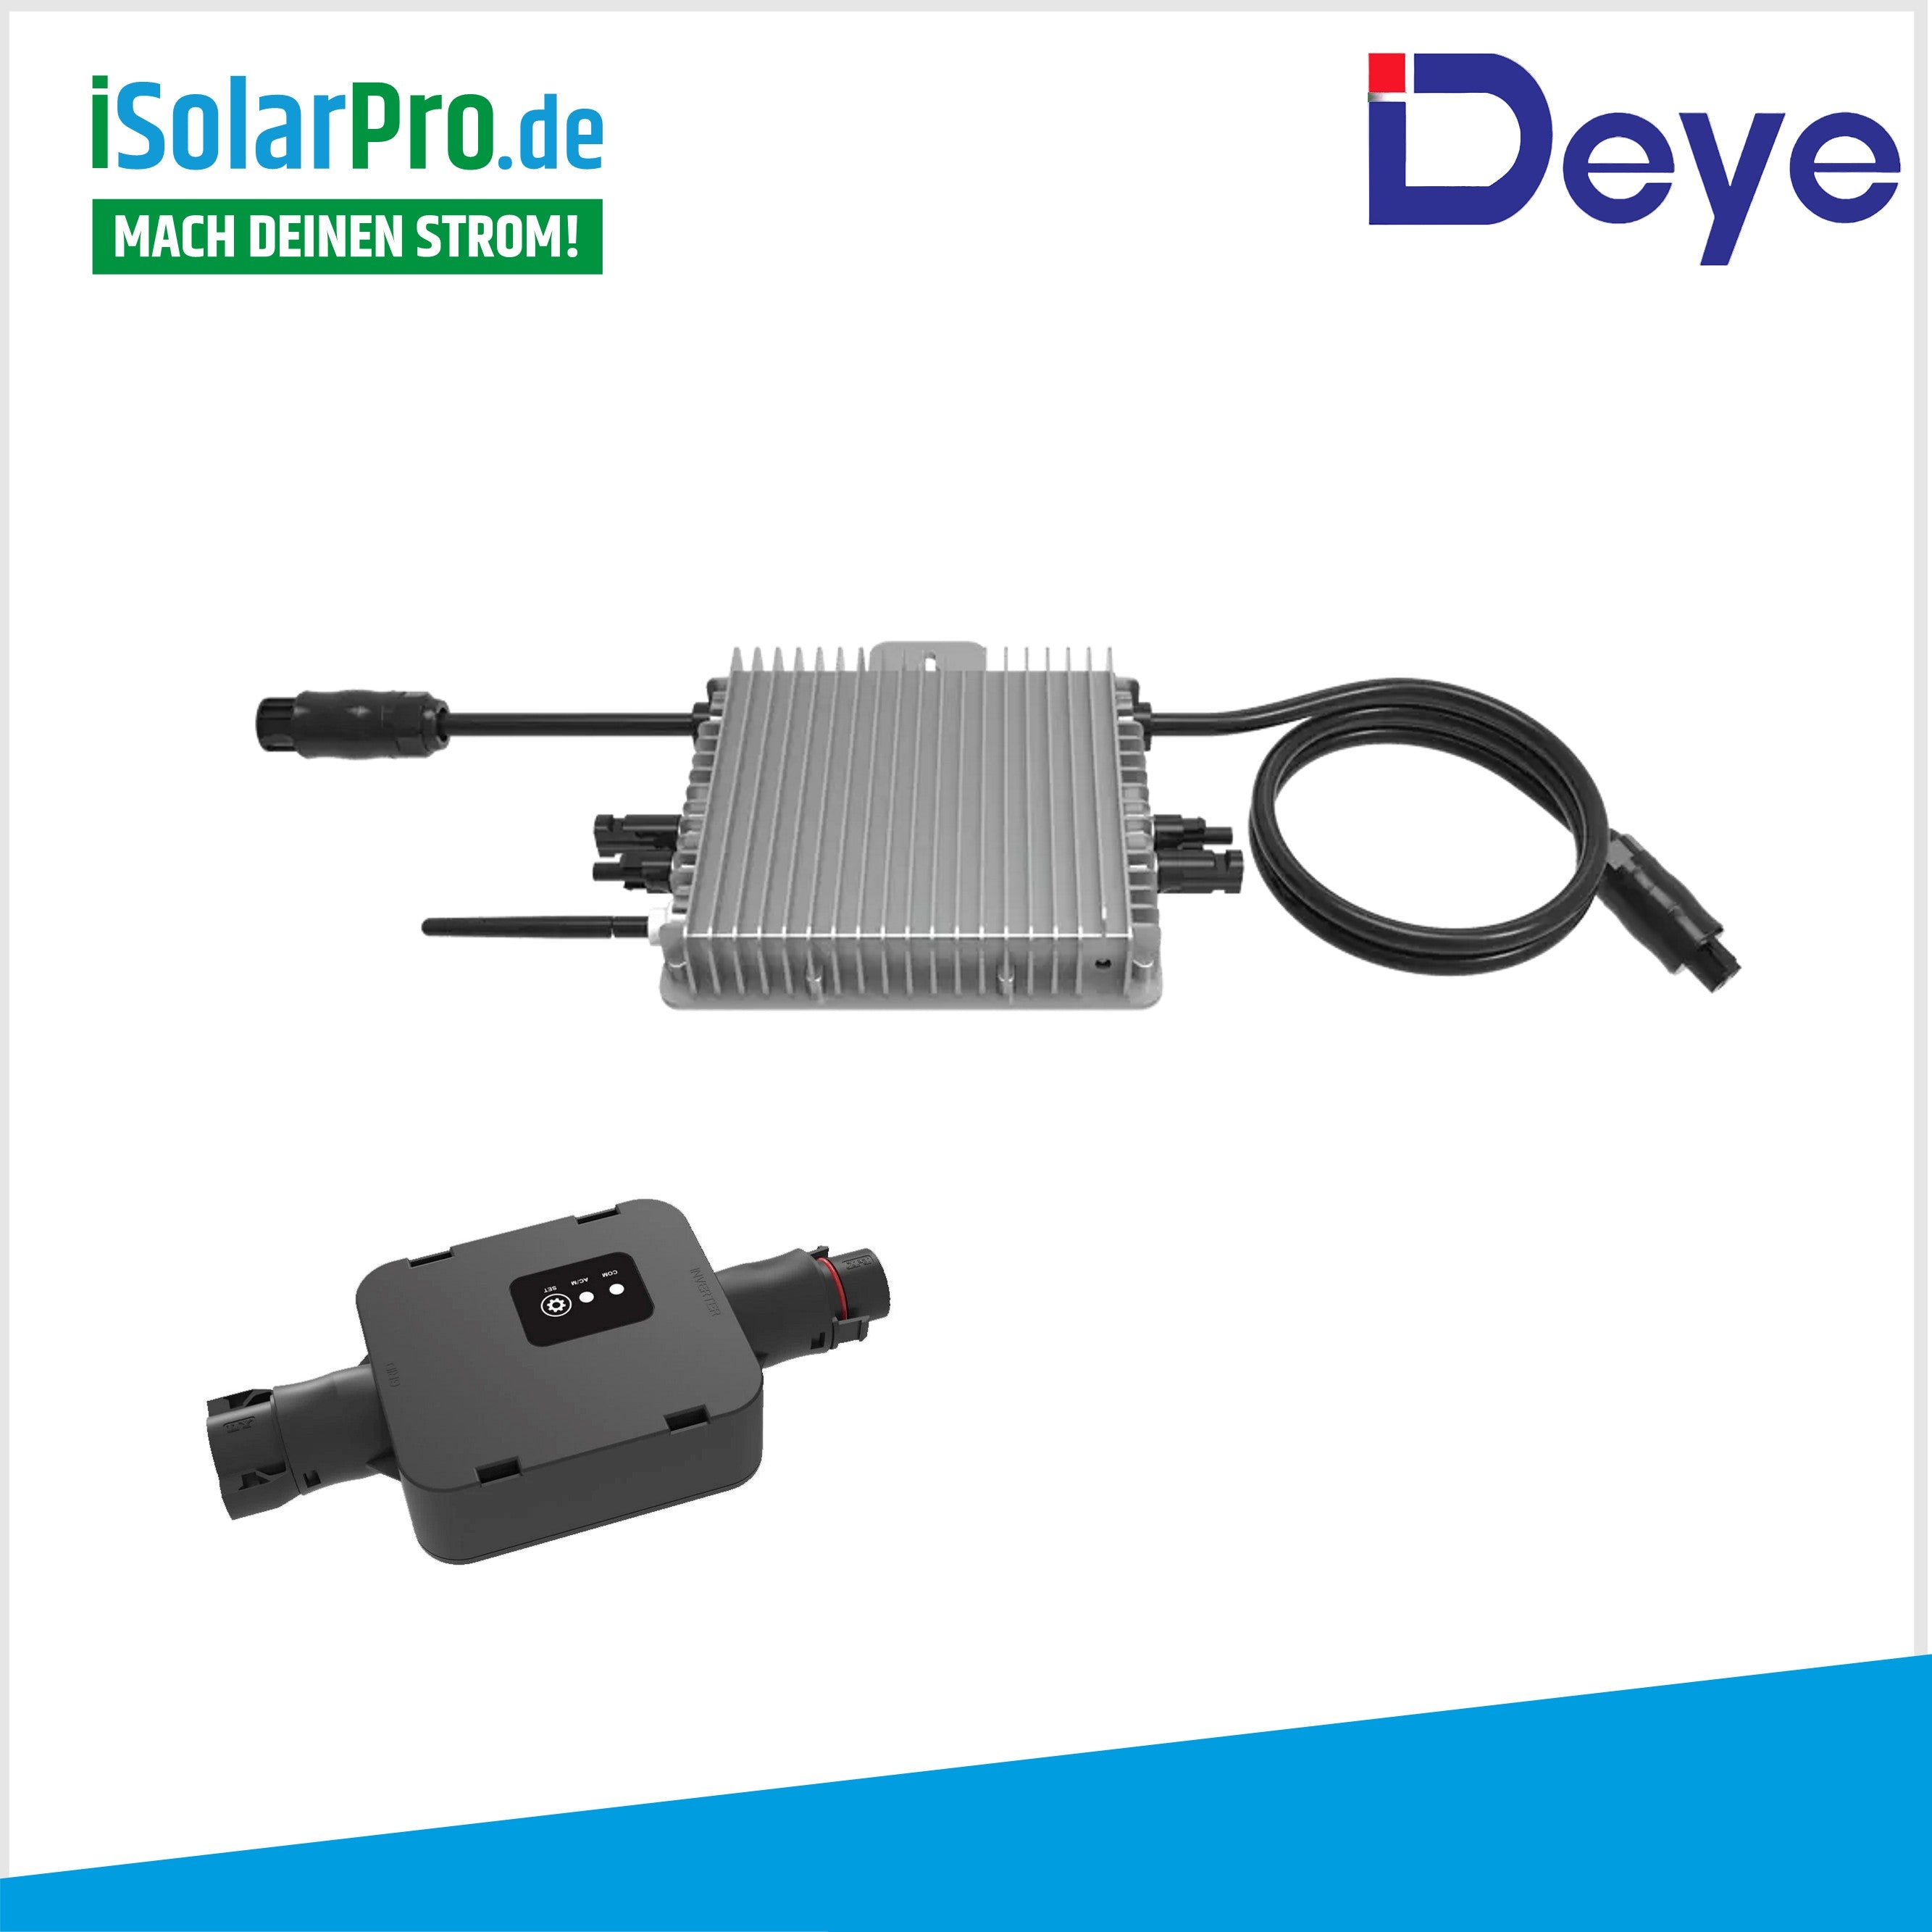 Deye Sun600G3 0,6kW Micro-Wechselrichter Balkonkraftwerk 1-phasig, Solar- Wechselrichter, Photovoltaik